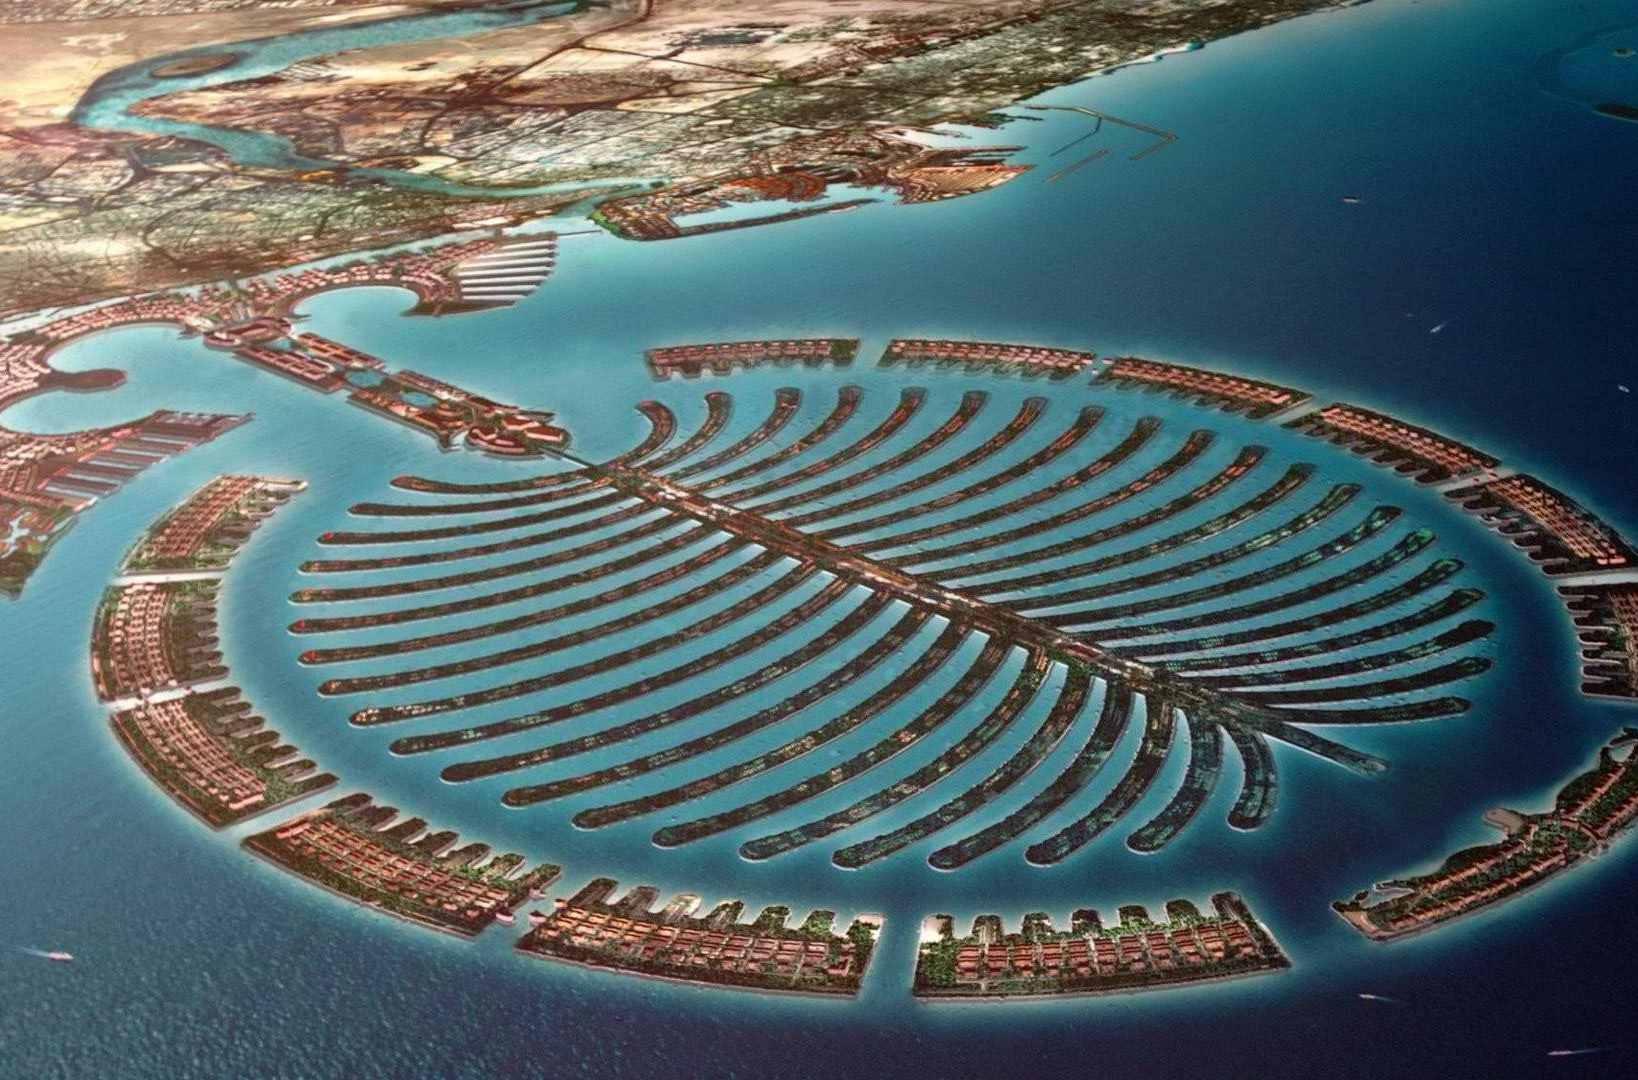 被称为“世界第八大奇迹”的朱美拉棕榈岛 成倍的扩张了迪拜迷人的海岸线